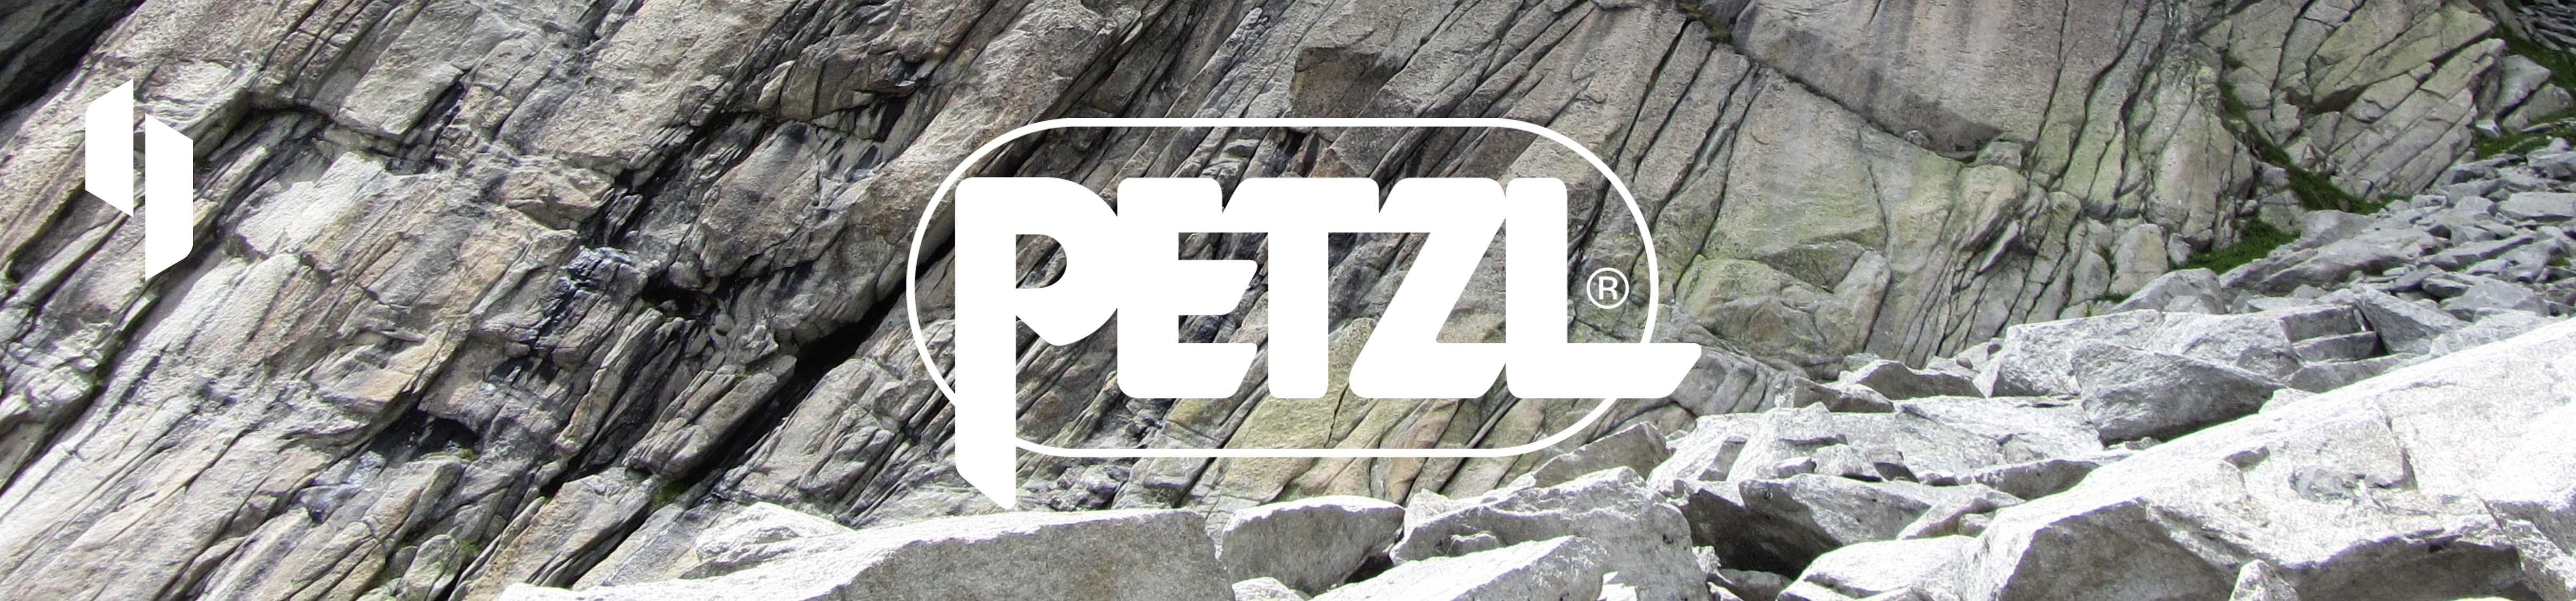 Petzl Pro | Höhenarbeit | Toprope Shop